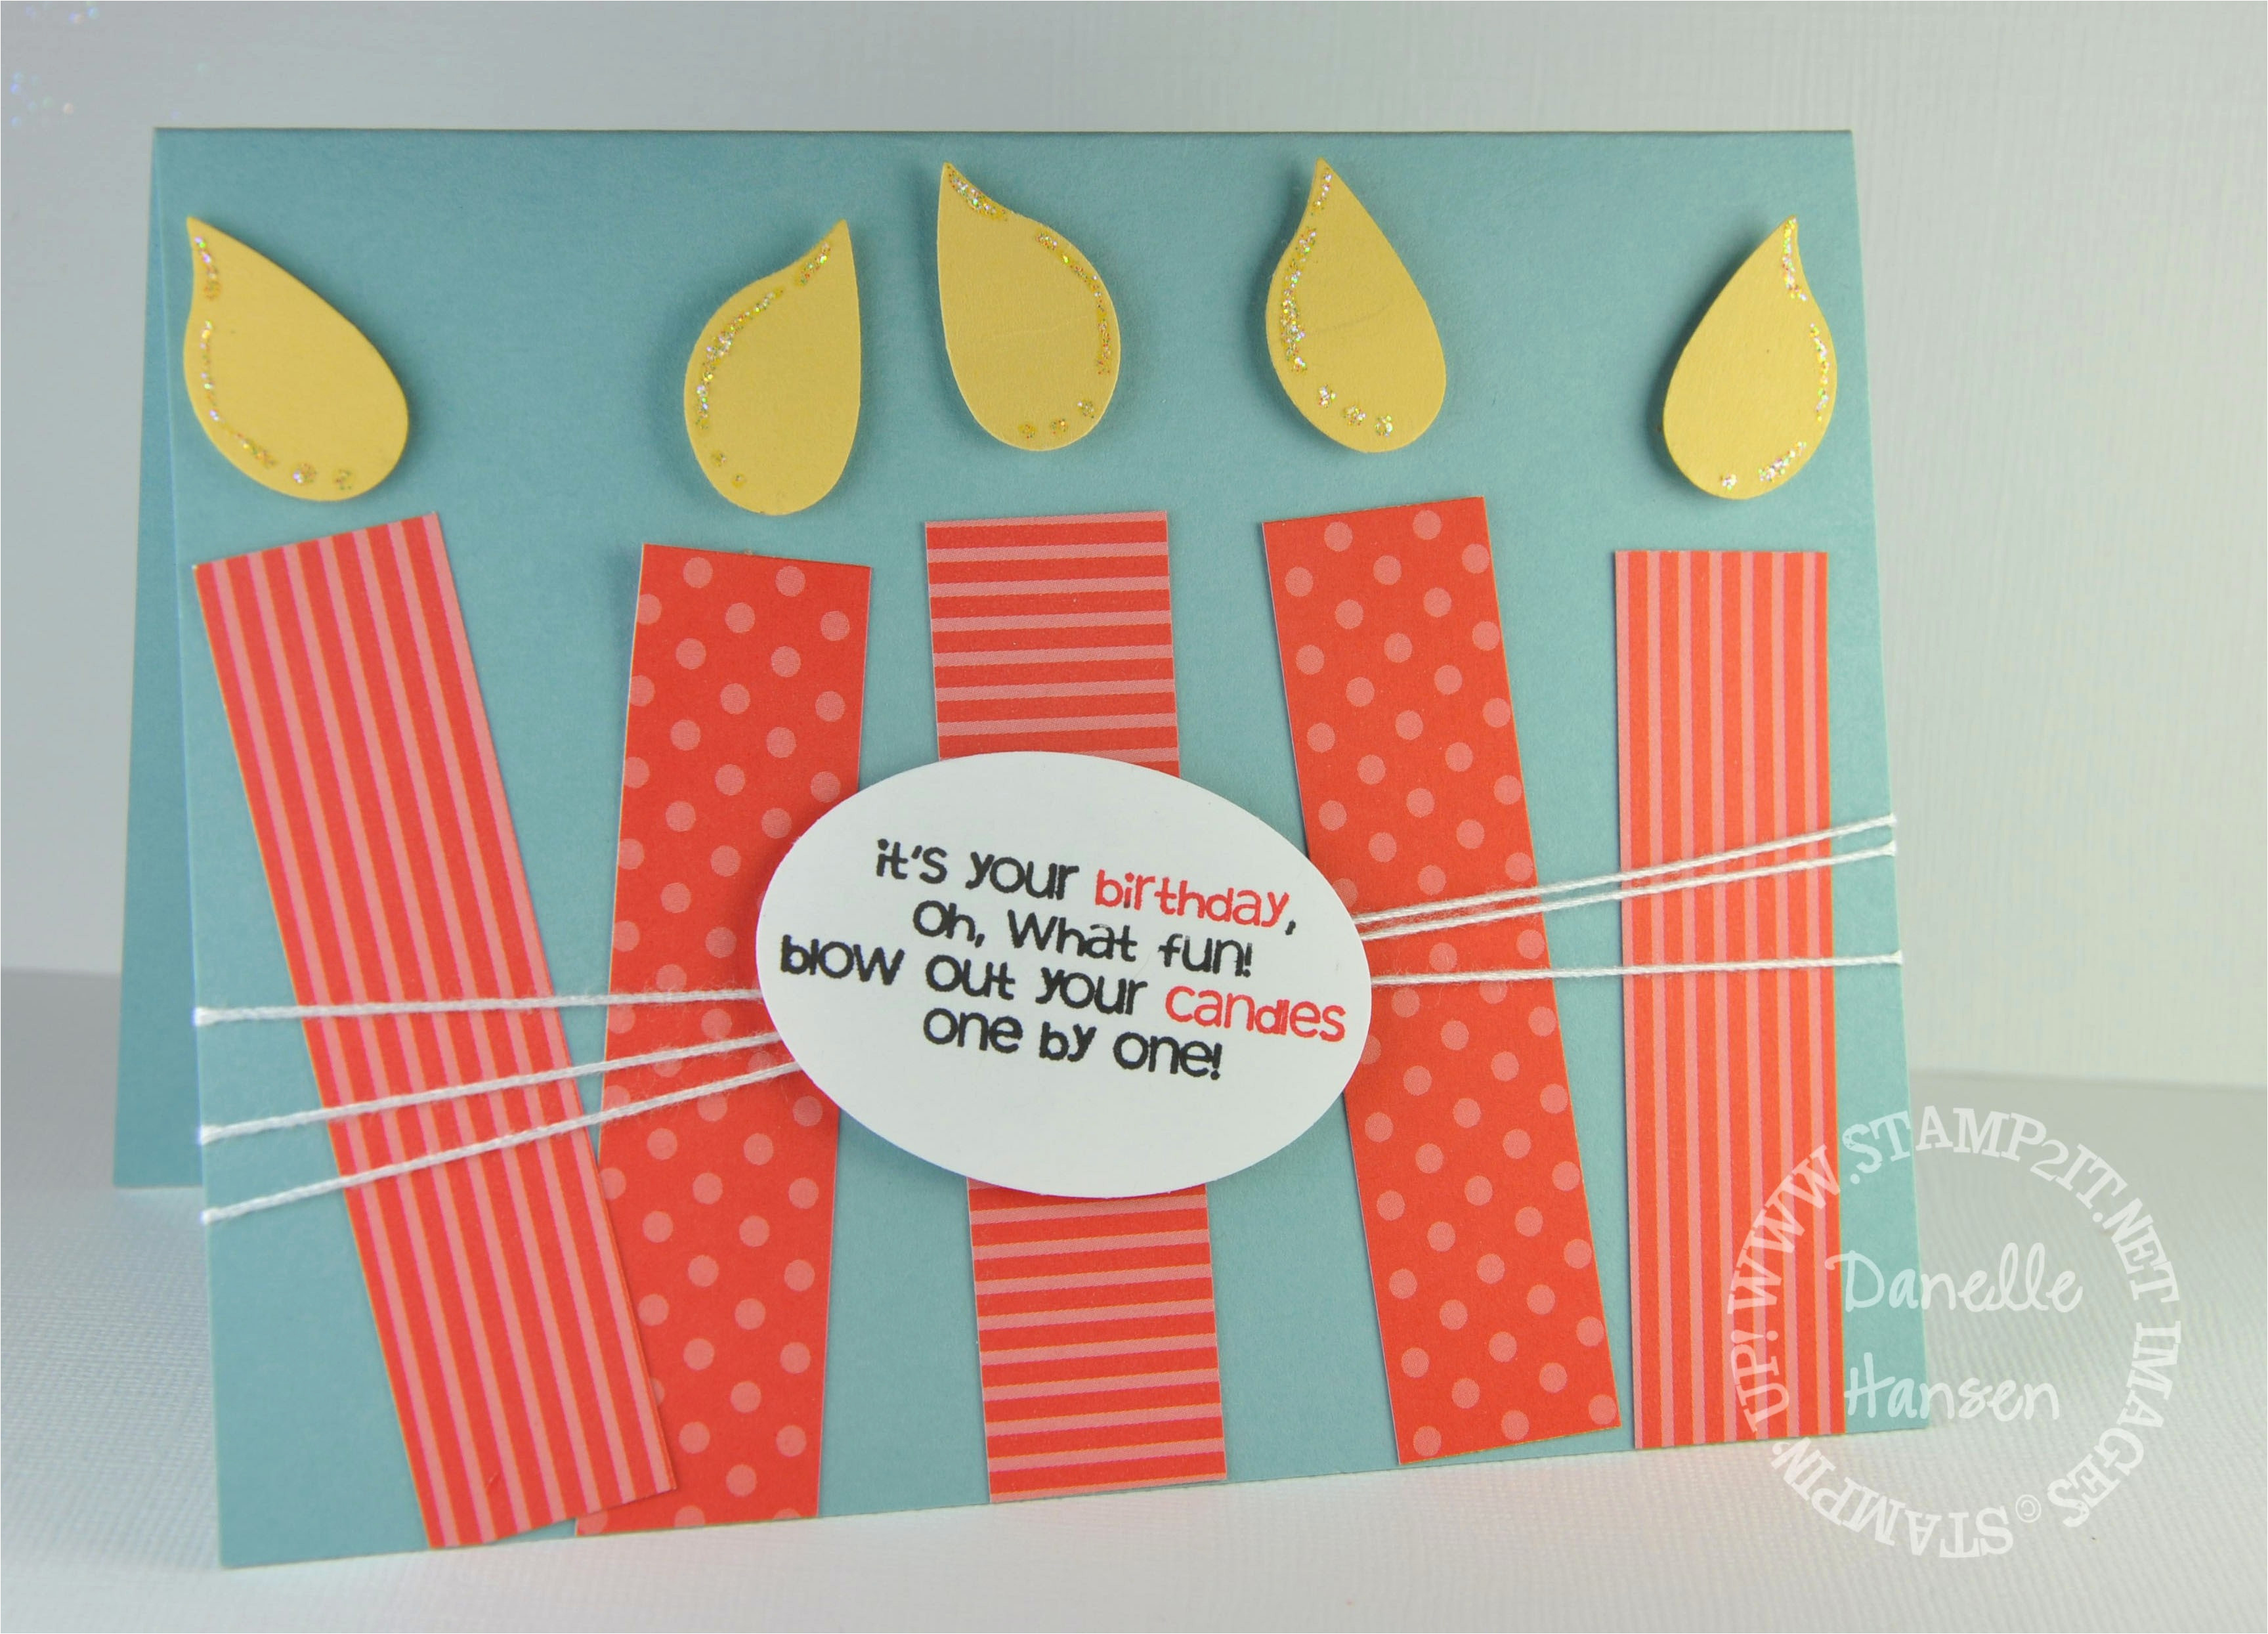 Creative Birthday Cards Ideas Diy Birthday Cards For Husband Creative Handmade Birthday Card Ideas